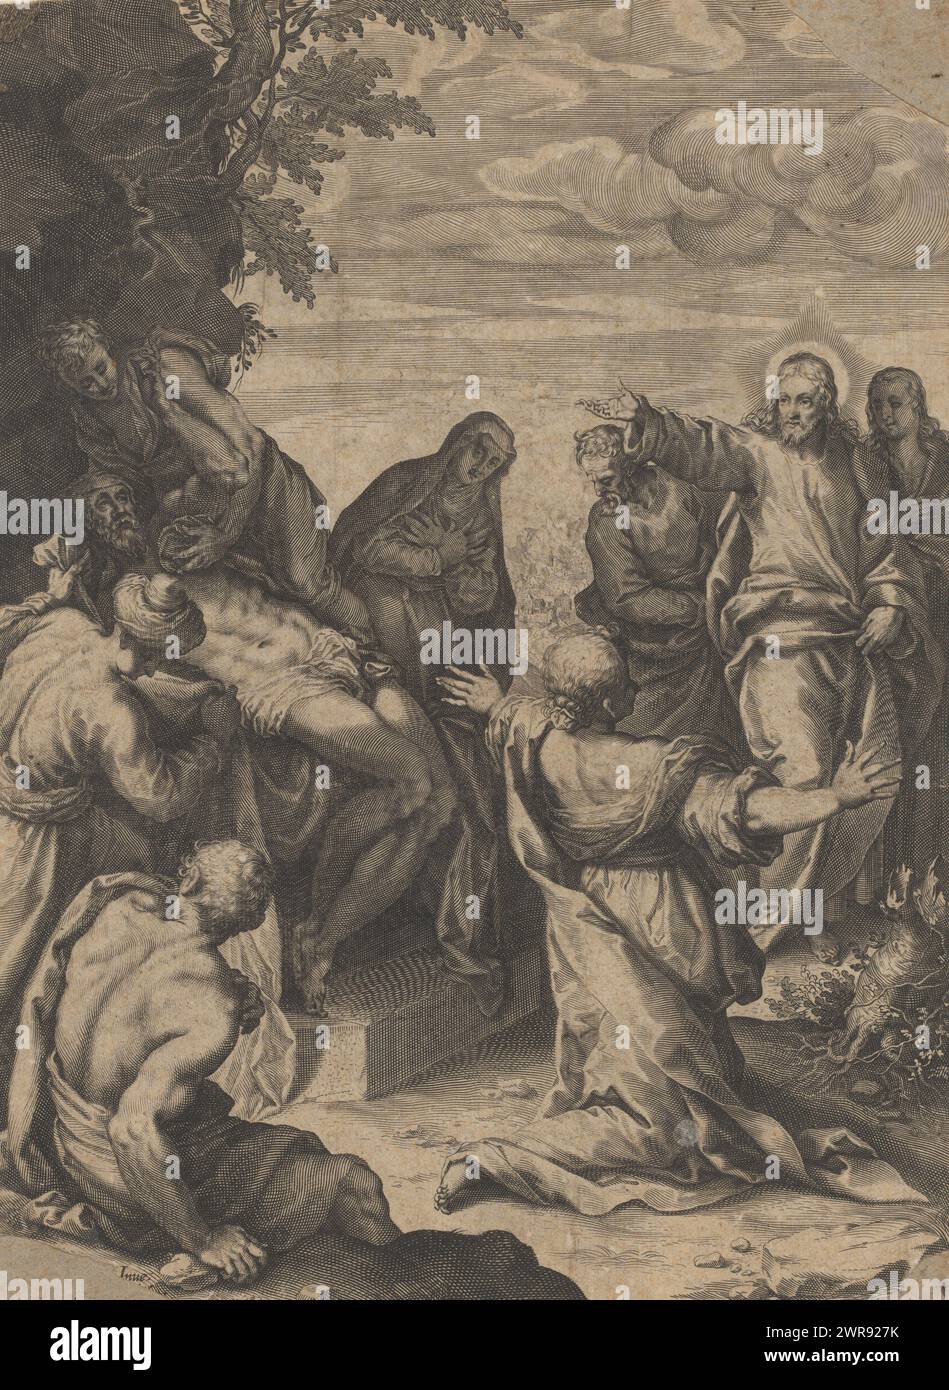 Relance de Lazarus, imprimeur : Lucas Kilian, après conception par : Jacopo Palma (il Giovane), anonyme, 1600, papier, gravure, hauteur 305 mm × largeur 226 mm, impression Banque D'Images